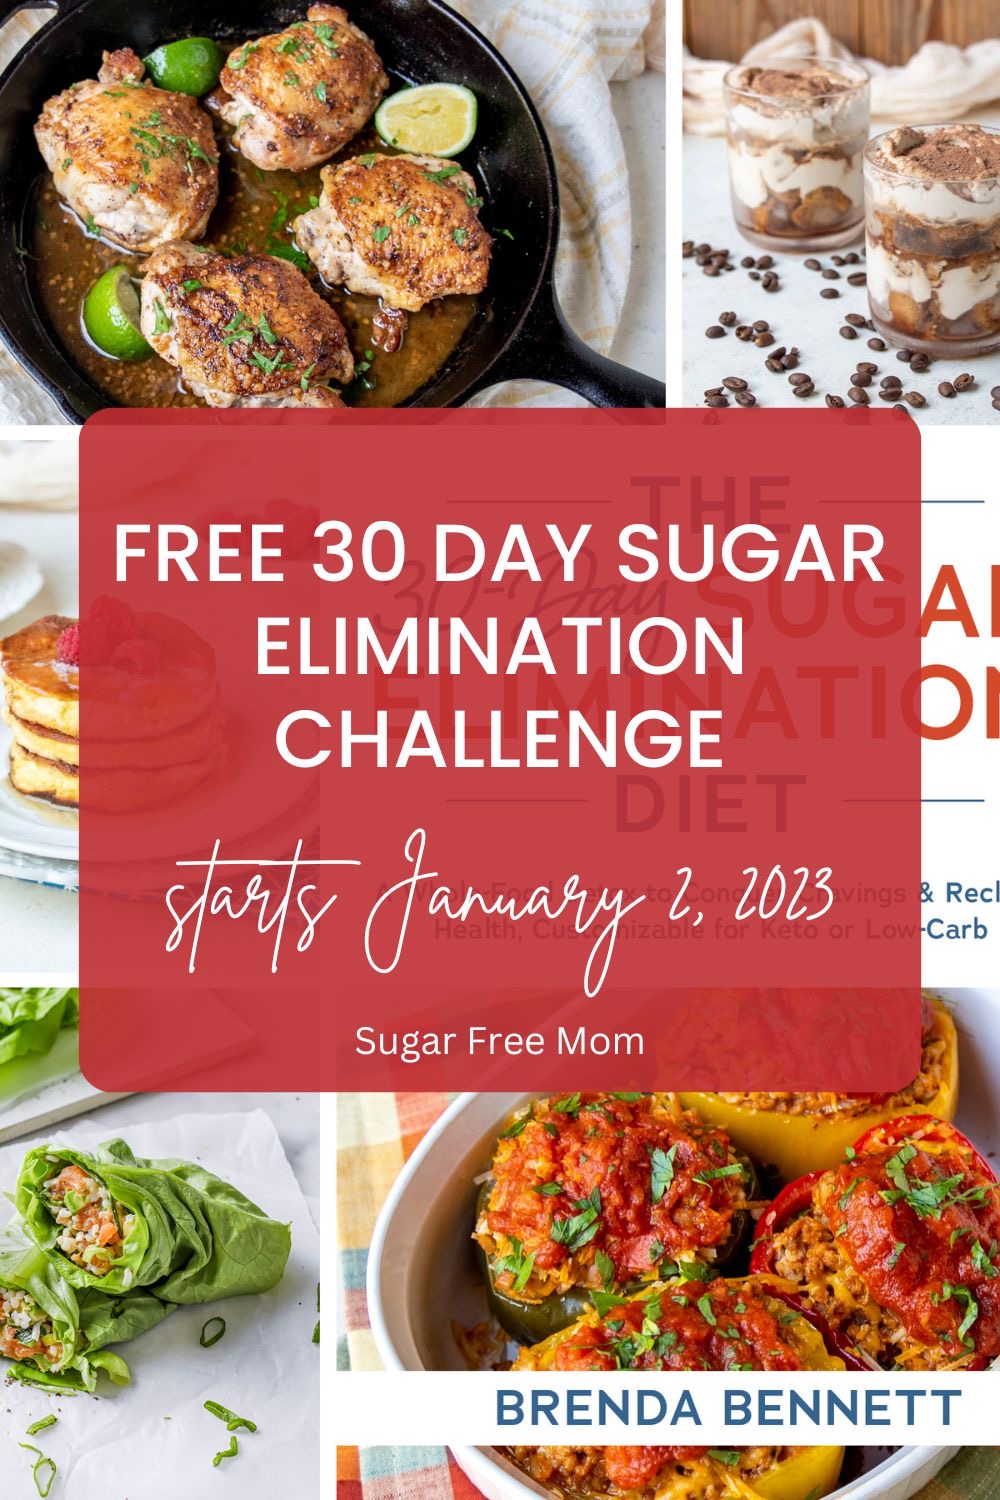 The 30-Day Sugar Elimination Diet Challenge